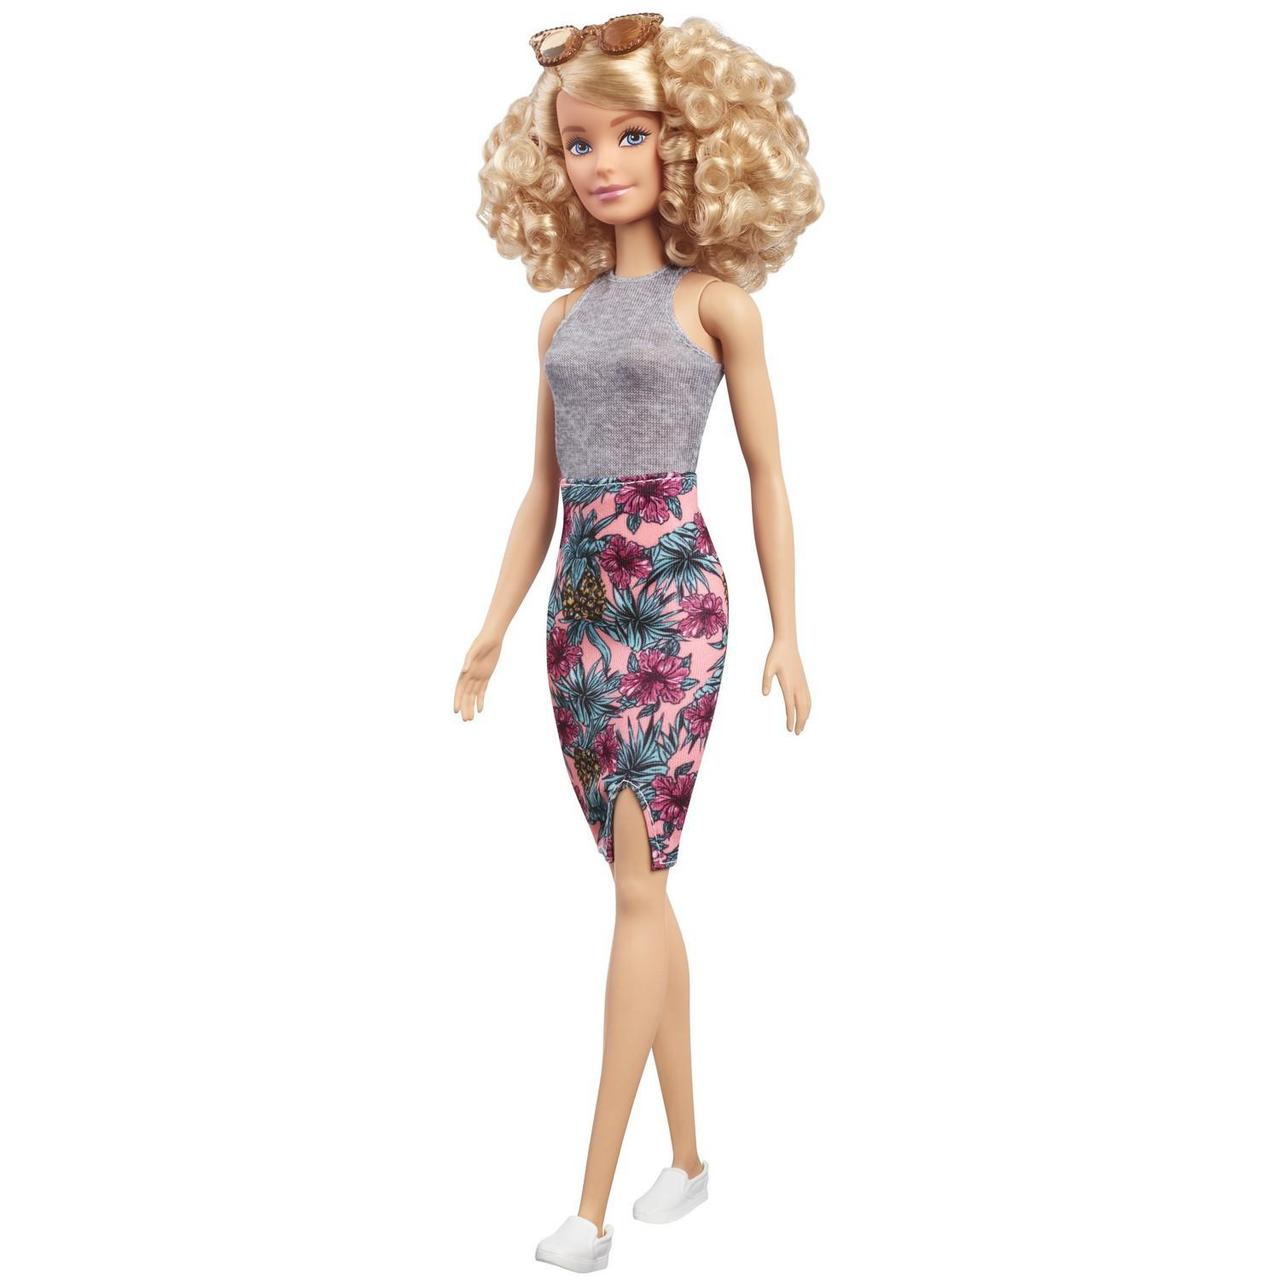 Barbie "Игра с модой" Кукла Барби Блондинка в цветастой юбке #70 (Высокая)